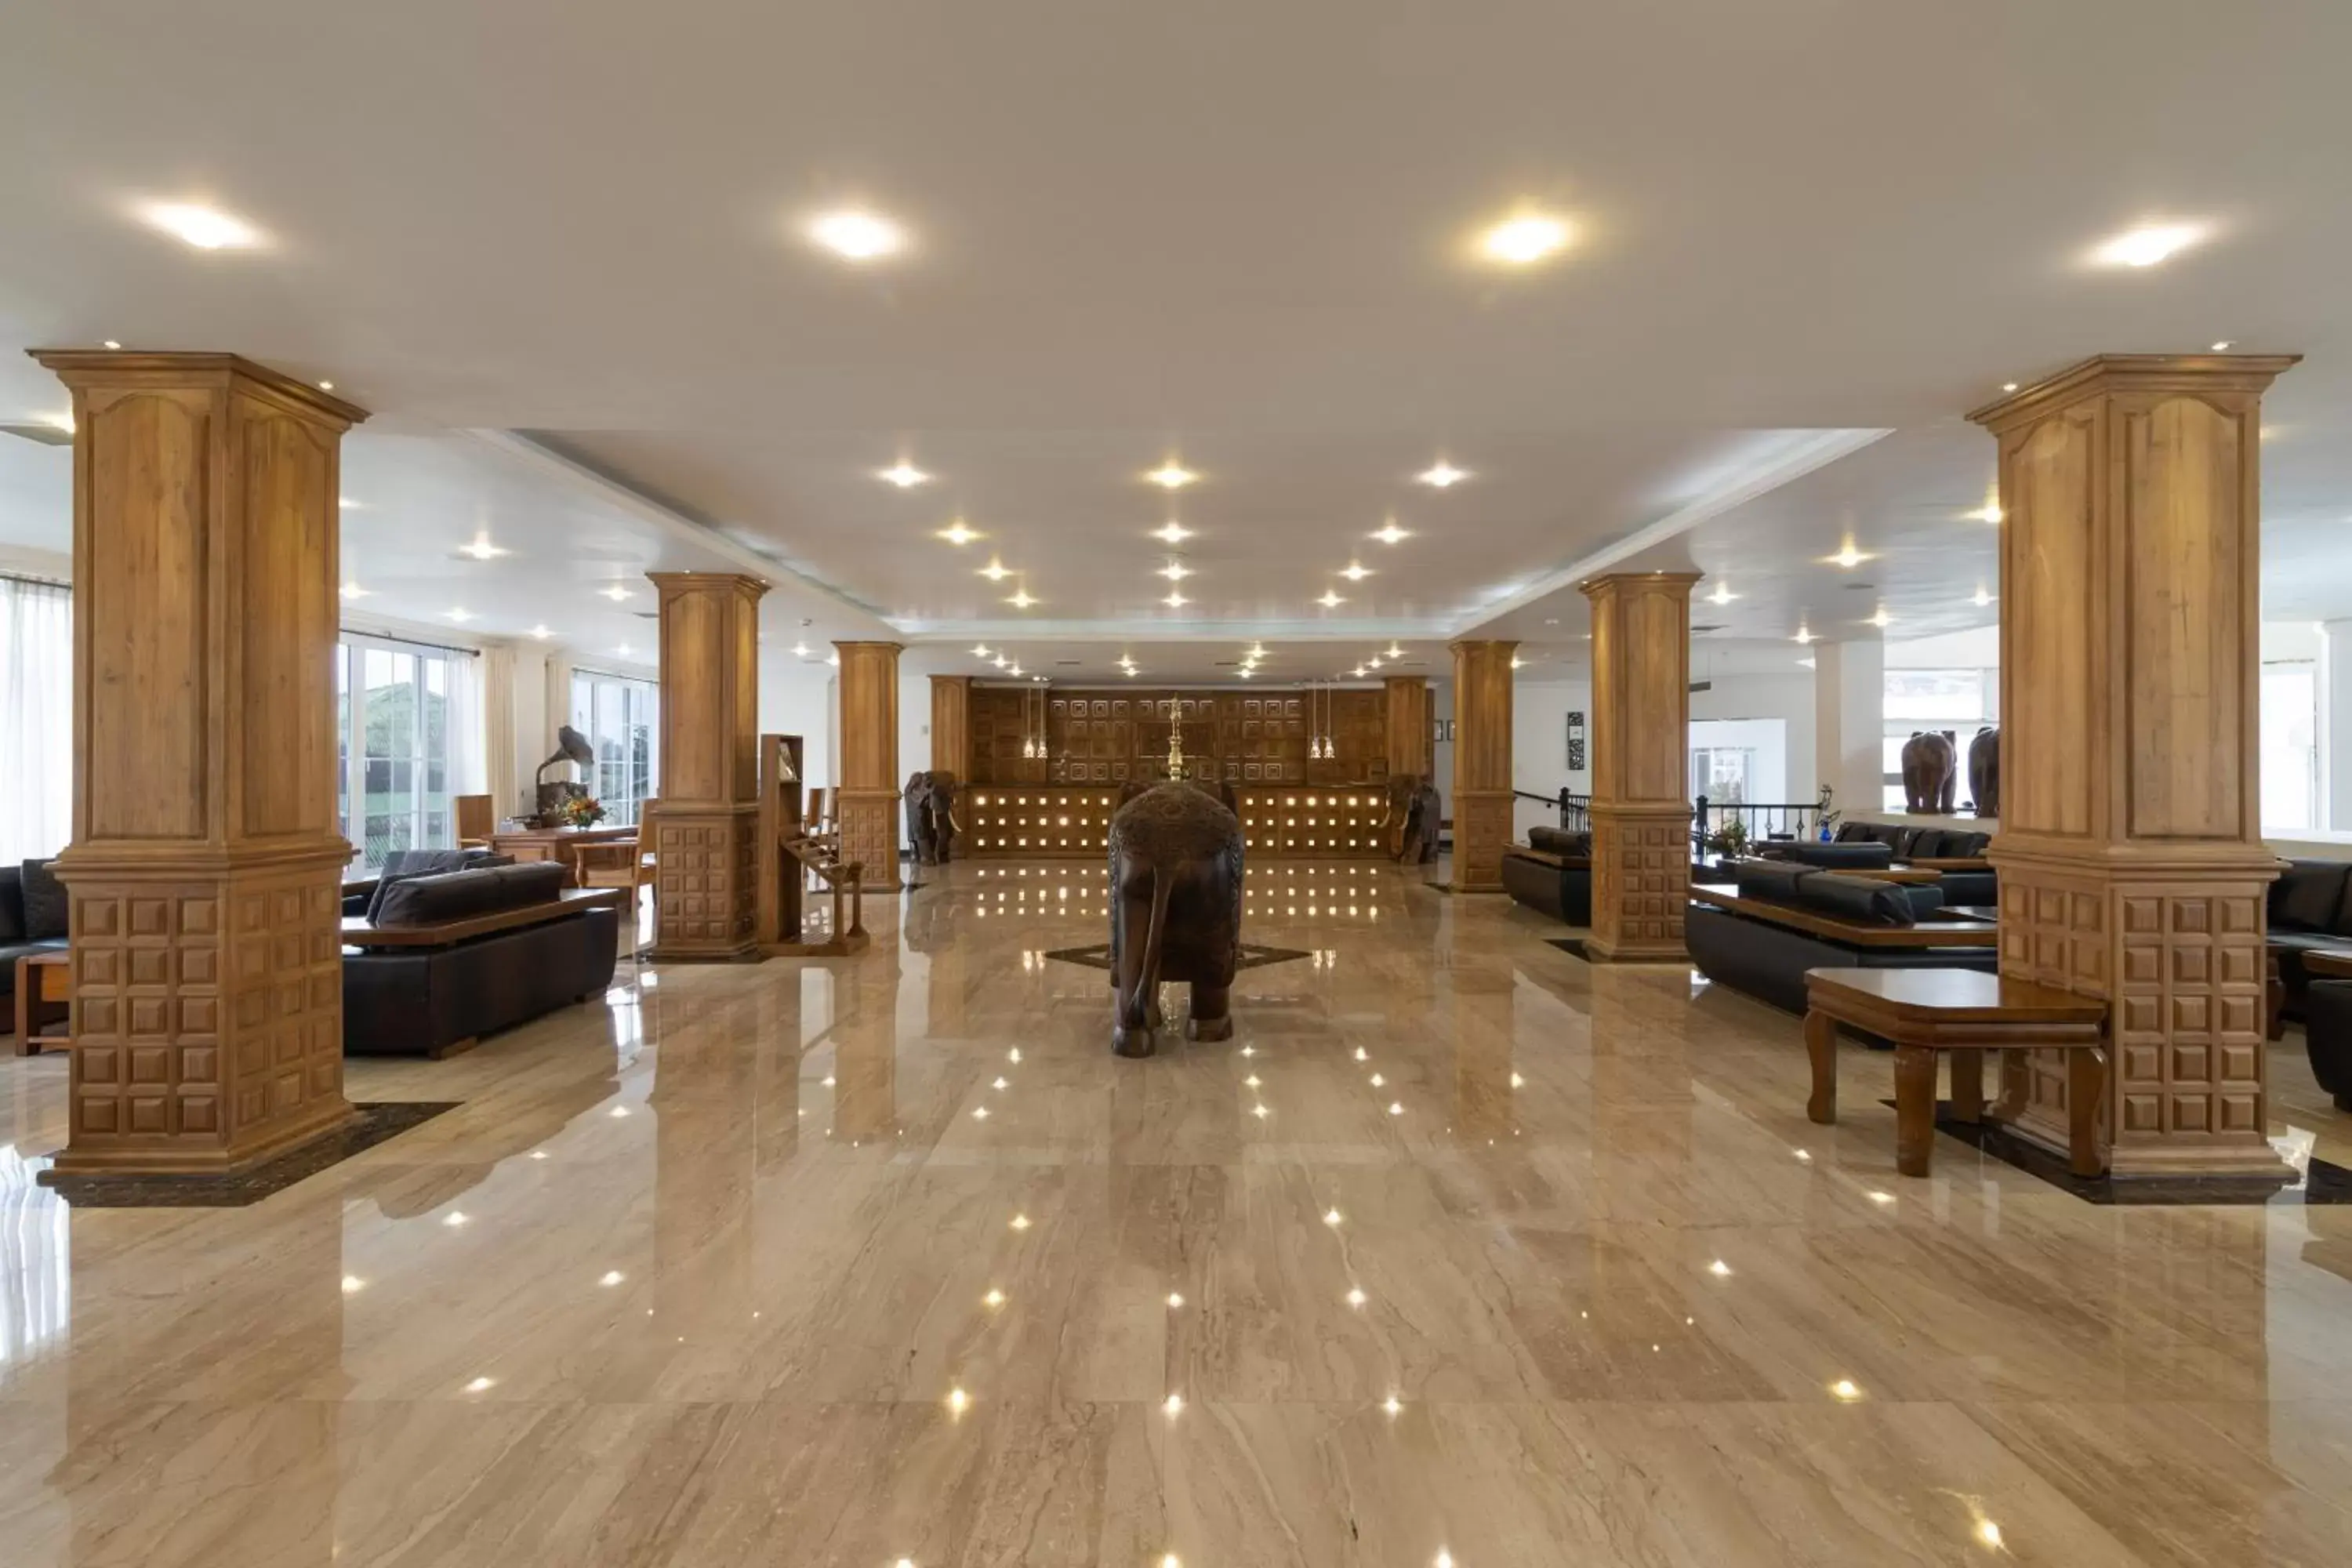 Lobby or reception, Lobby/Reception in Araliya Green Hills Hotel